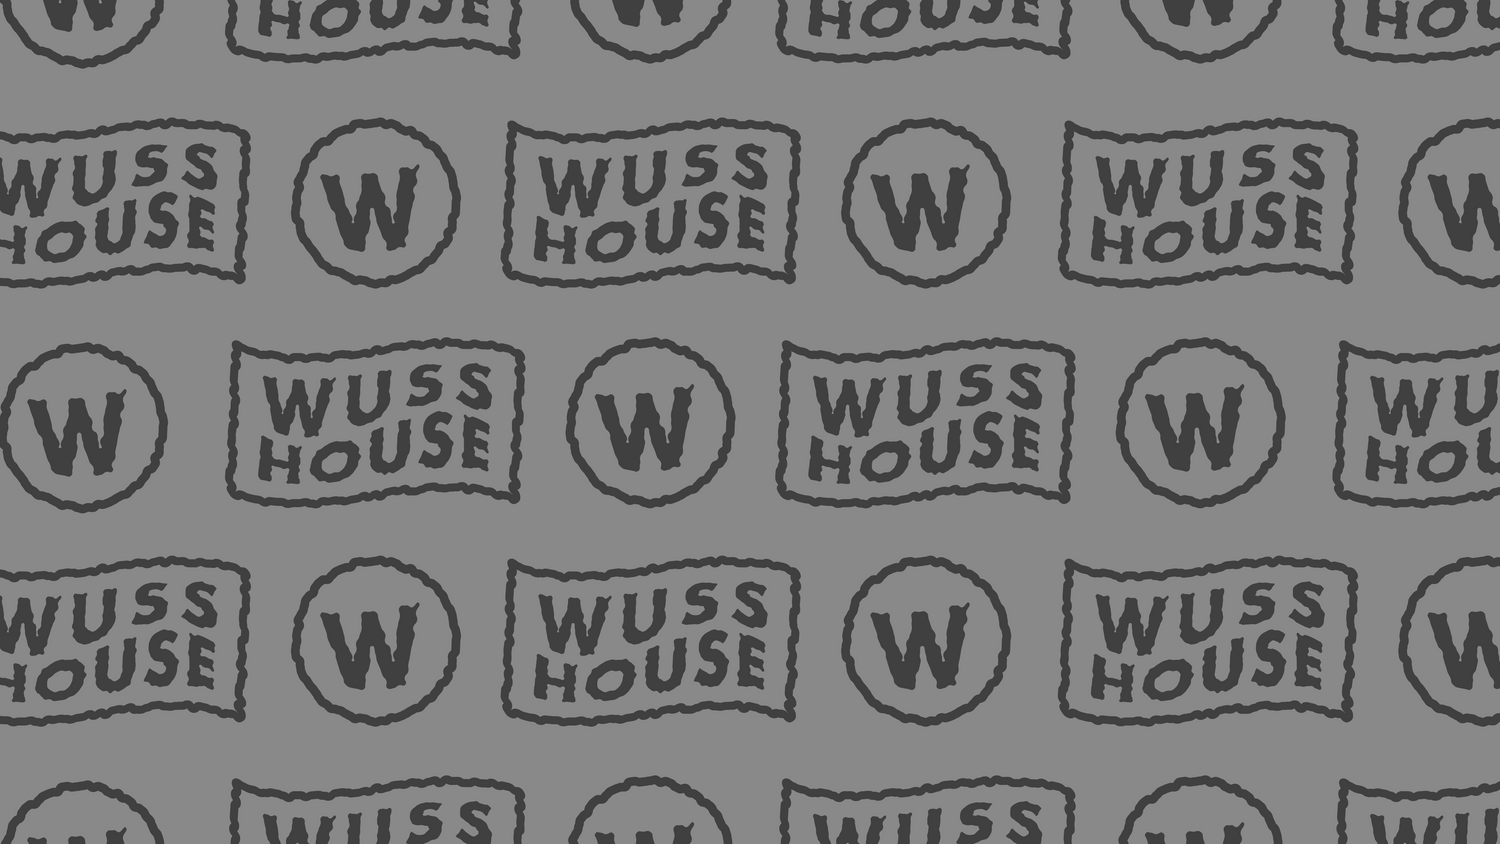 Wuss House Merch